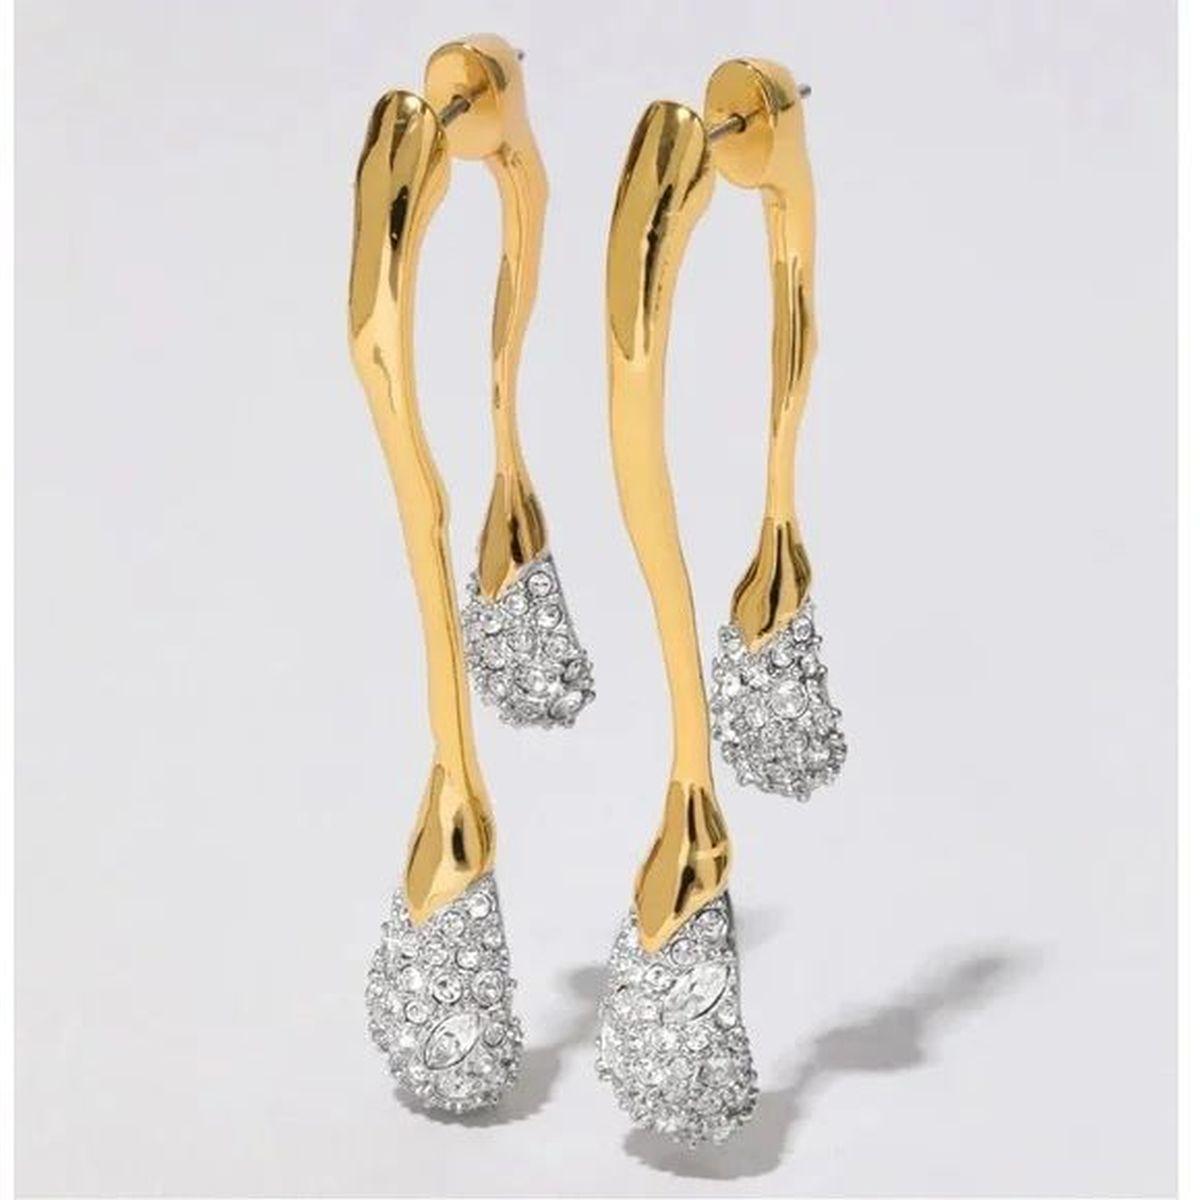 Einfach schön! Von vorne nach hinten Alexis Bittar Designer Silhouette Ohrringe. Das Design besteht aus 14k vergoldetem Metall, das in zwei skulpturale Tropfen übergeht, die mit sorgfältig von Hand gesetzten Pave-Kristallen akzentuiert sind.